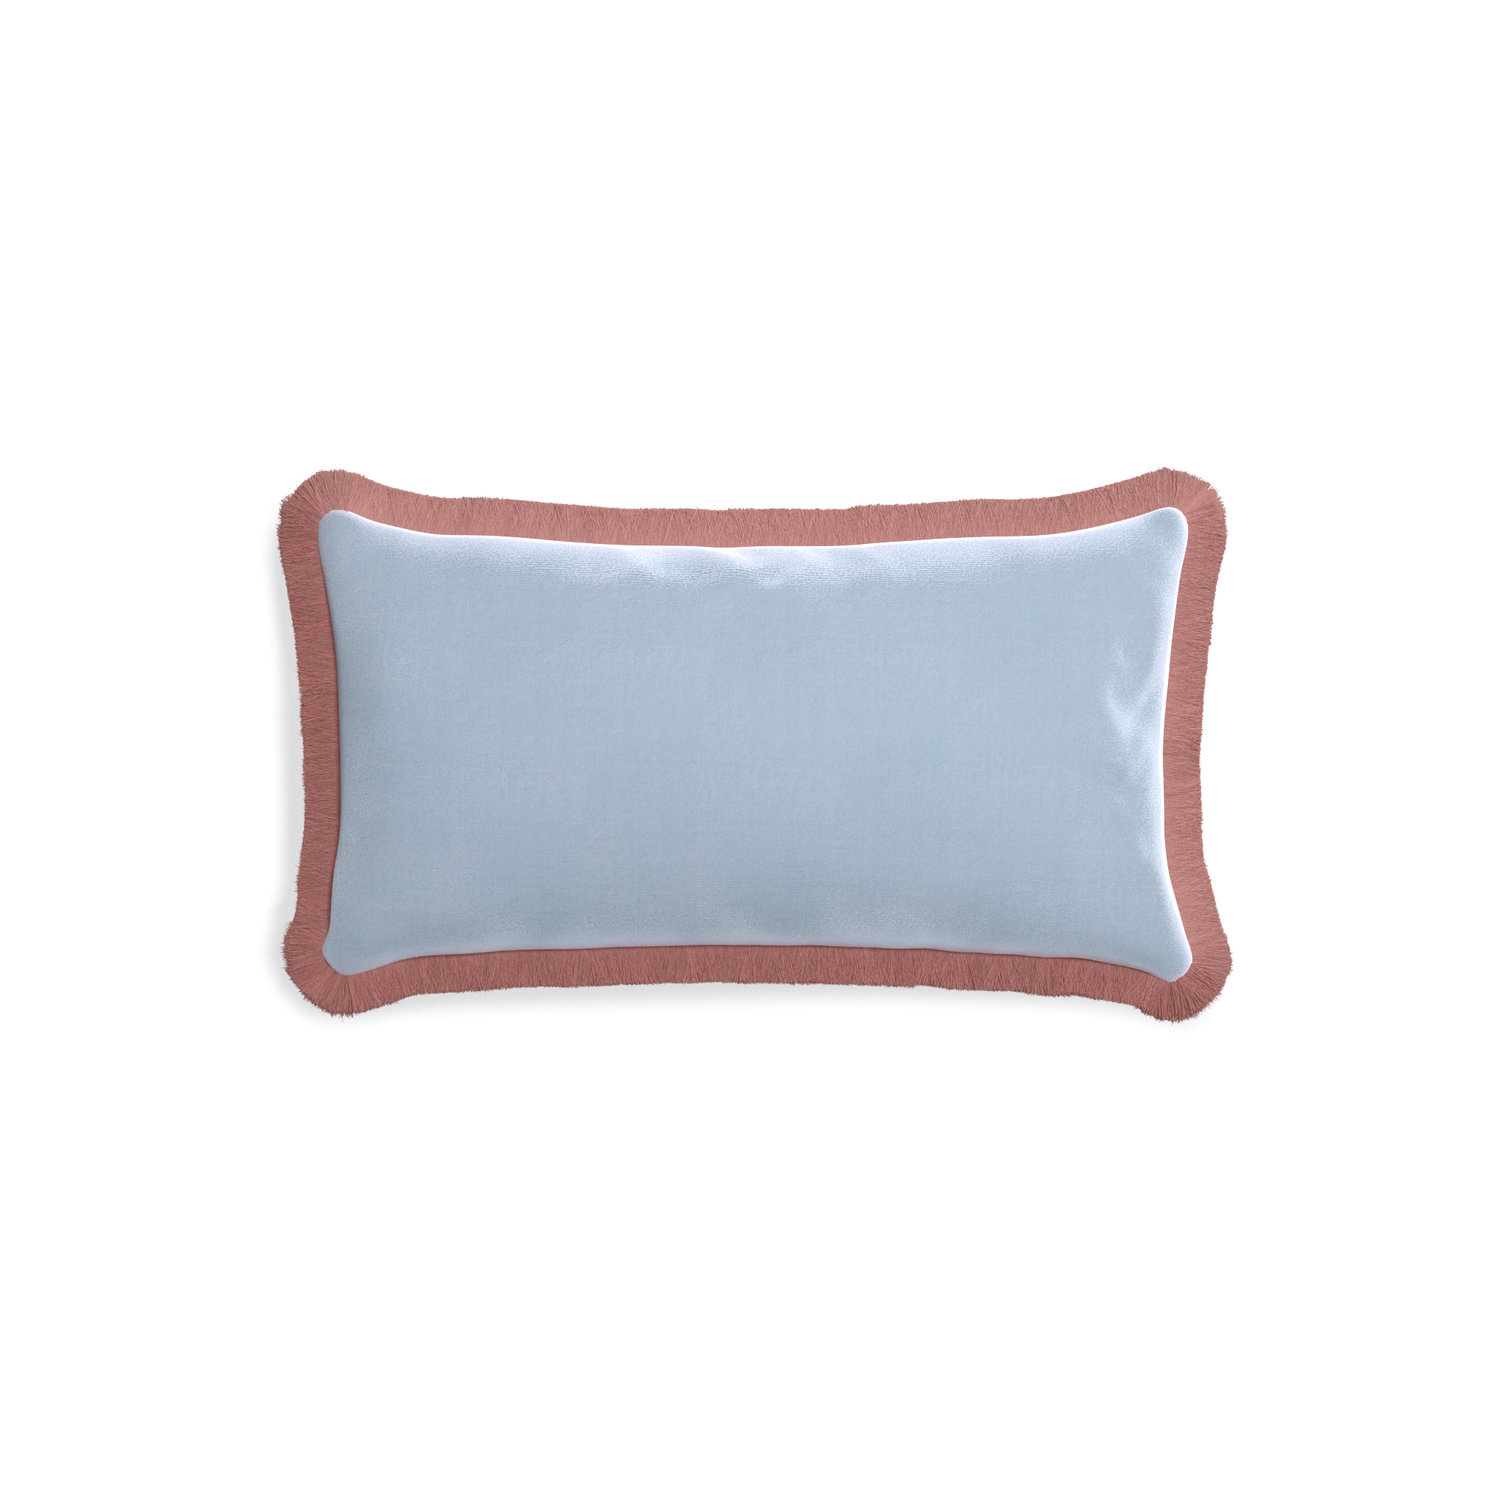 rectangle light blue velvet pillow with dusty rose fringe 